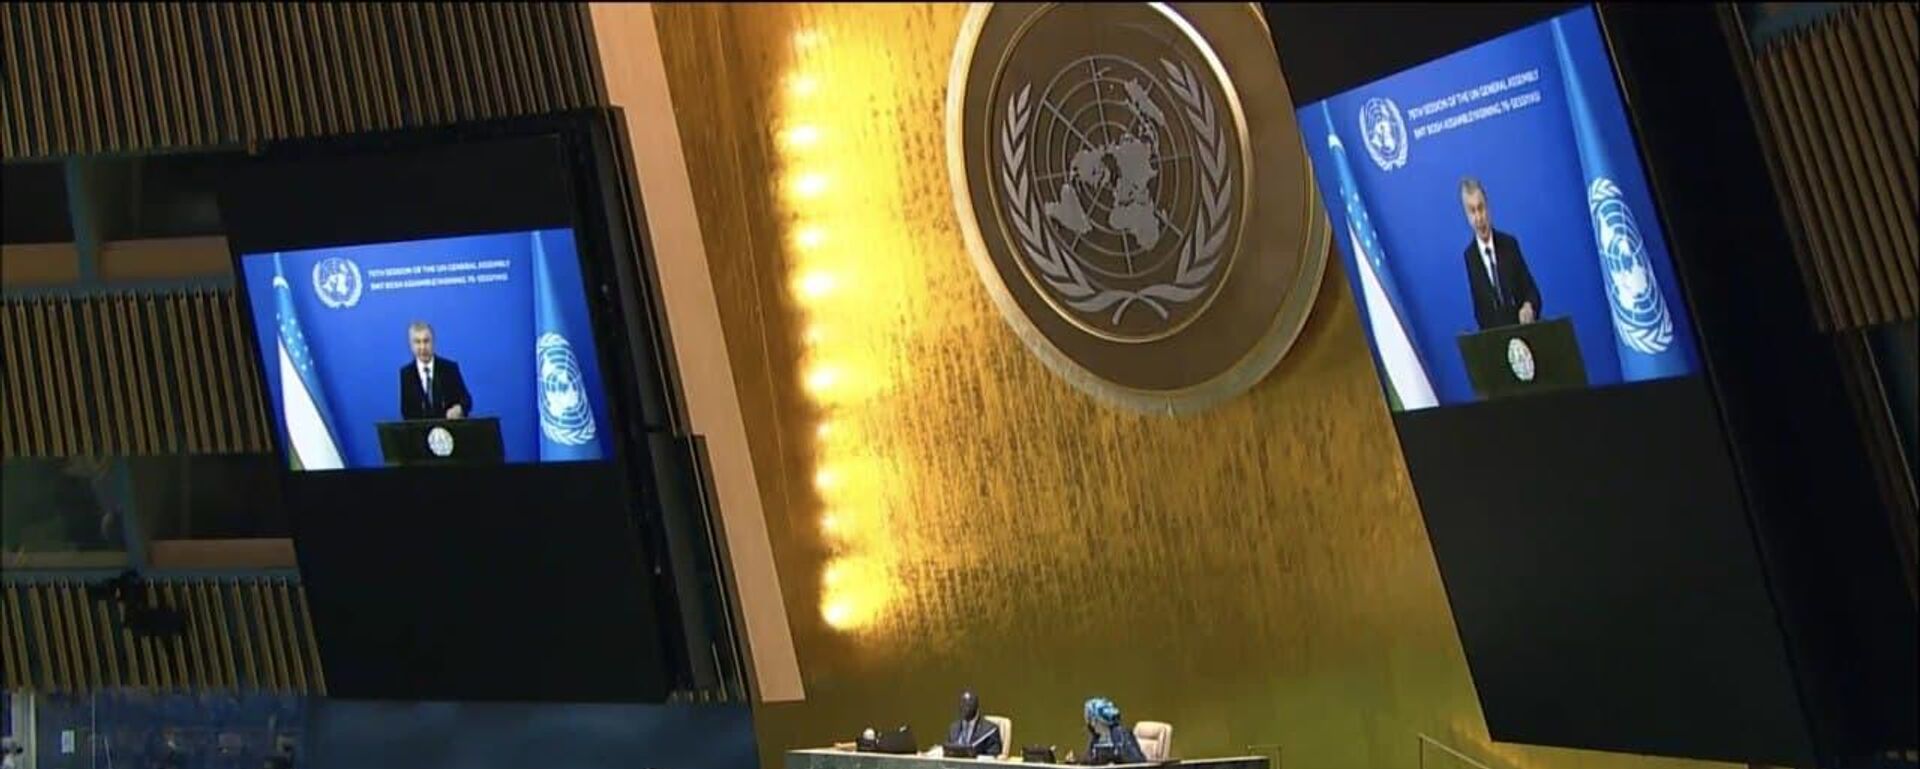 Шавкат Мирзиёев выступил с видеообращением на 76-й сессии Генеральной Ассамблеи ООН - Sputnik Ўзбекистон, 1920, 22.09.2021